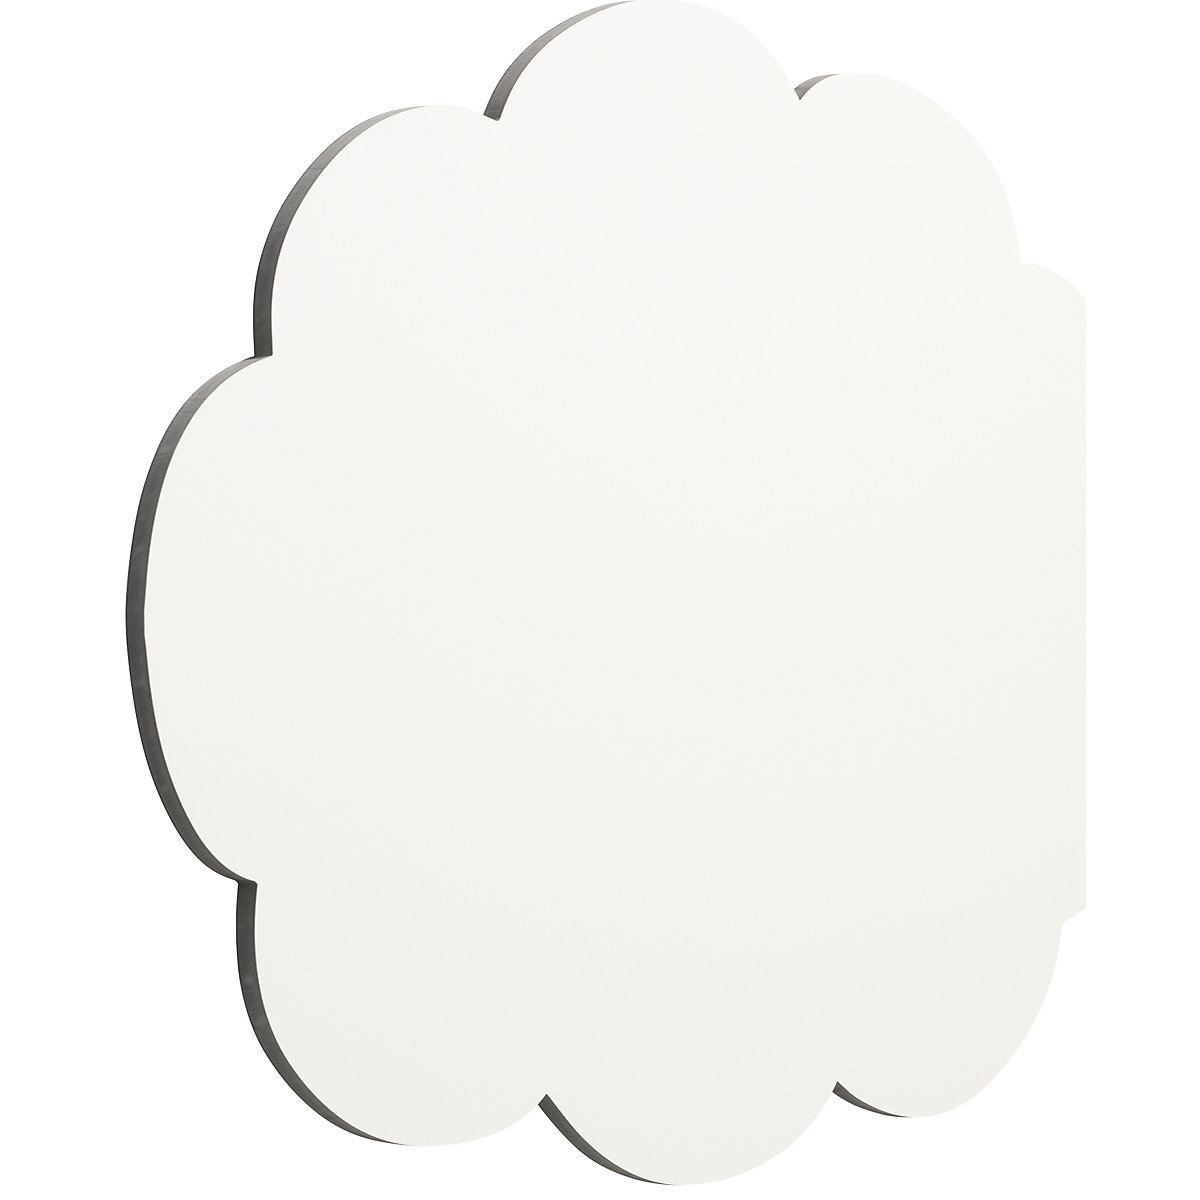 Designerska biała tablica, emaliowana – Chameleon (Zdjęcie produktu 3)-2